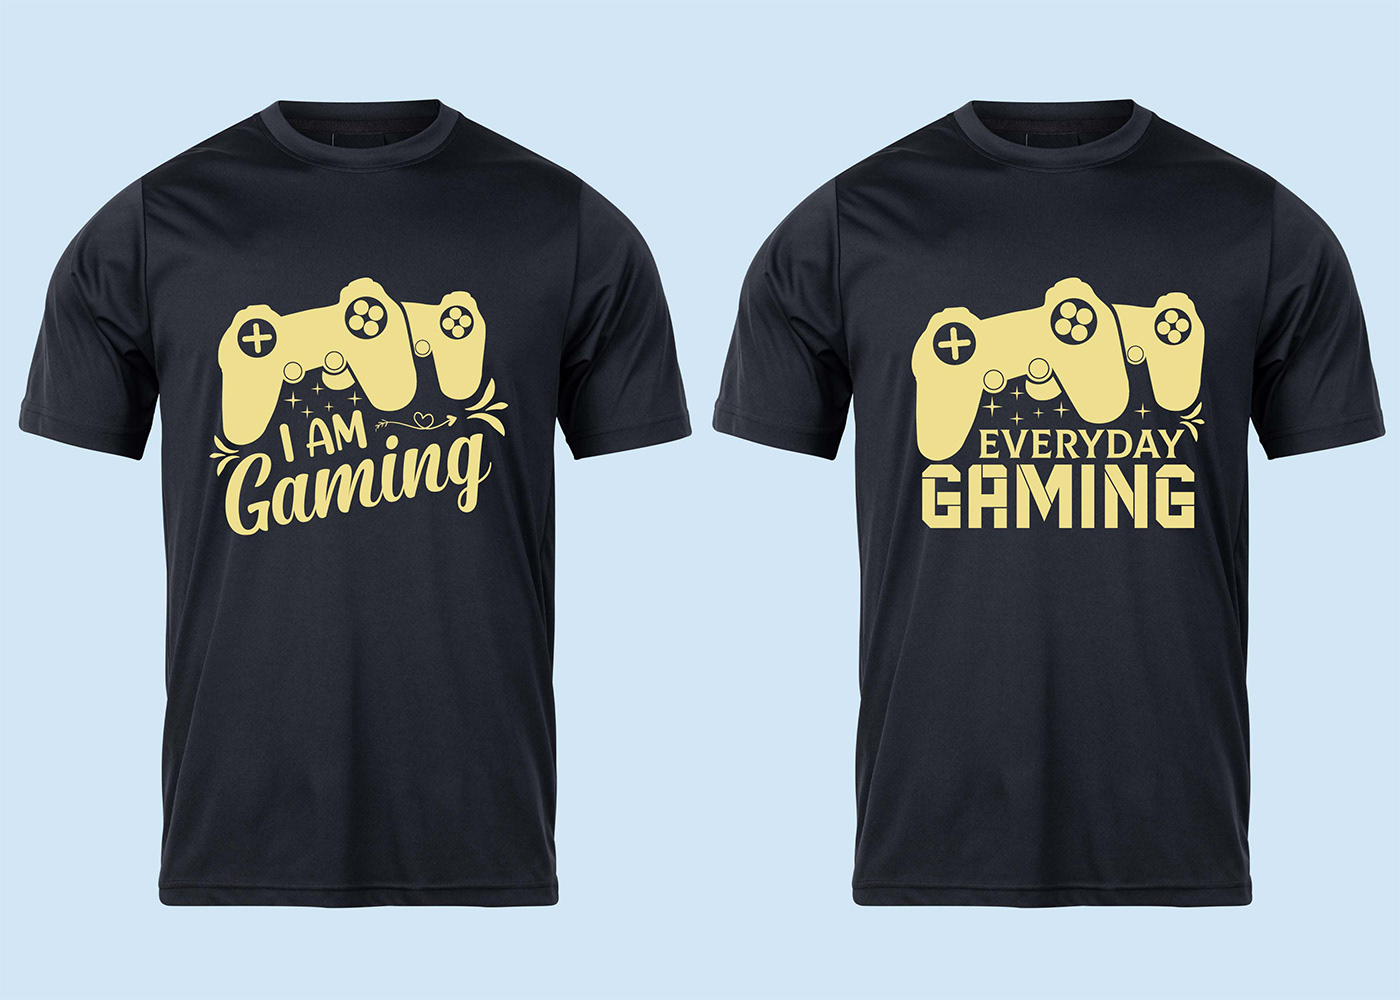 t-shirt T-Shirt Design tshirt Tshirt Design t shirt design game t-shirt design gaming t-shirt design sports t-shirt design Gaming